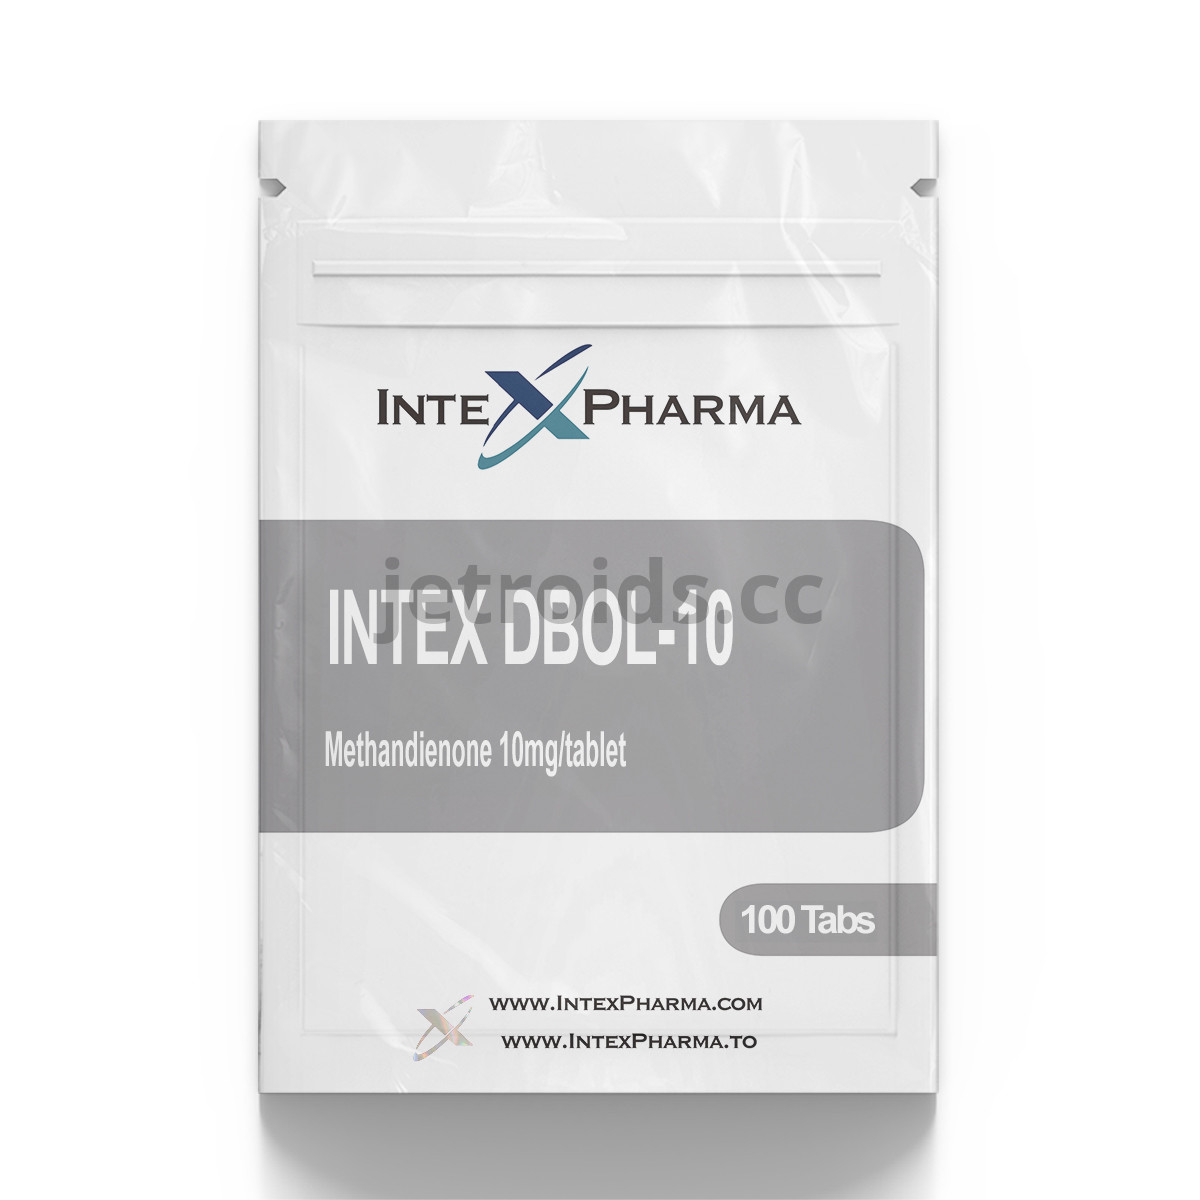 IntexPharma Intex DBOL-10 Product Info